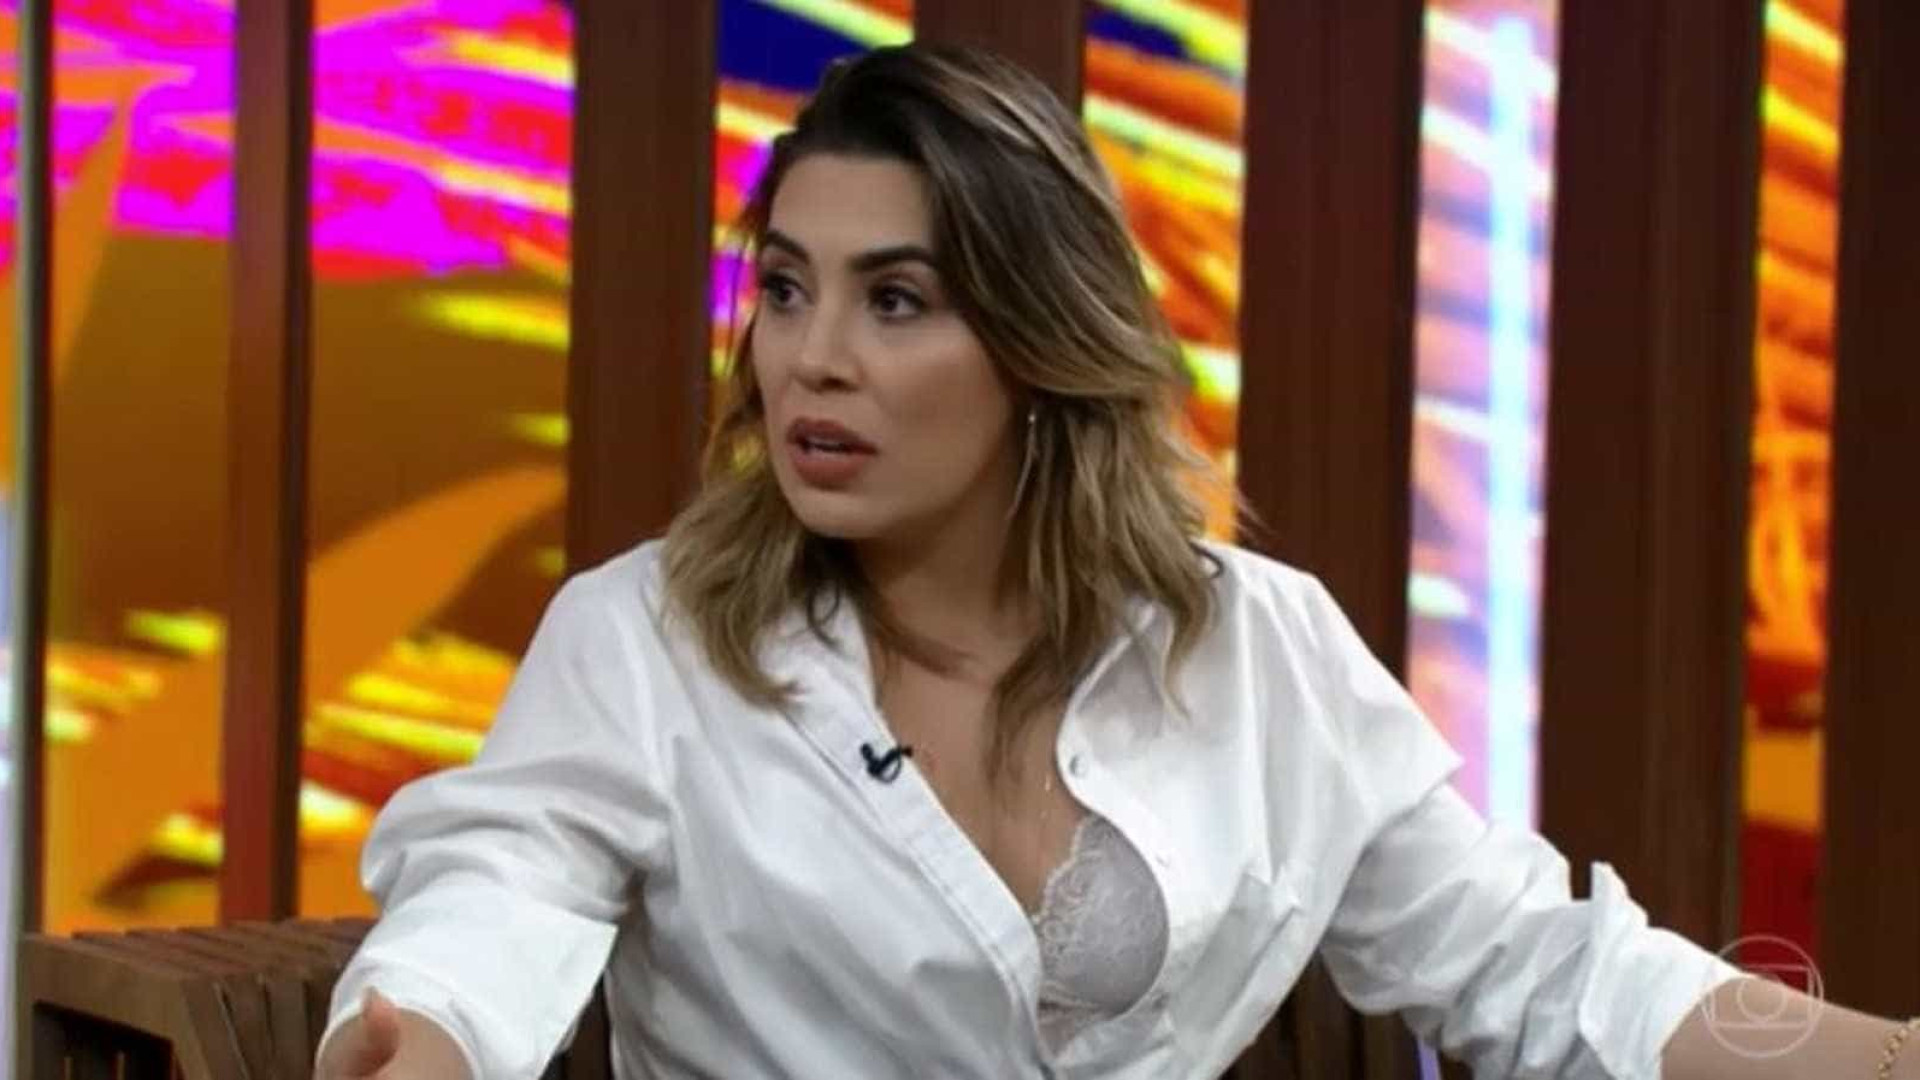 Cantora do hit '50 reais' diz ser incapaz de perdoar: 'Não esqueço'